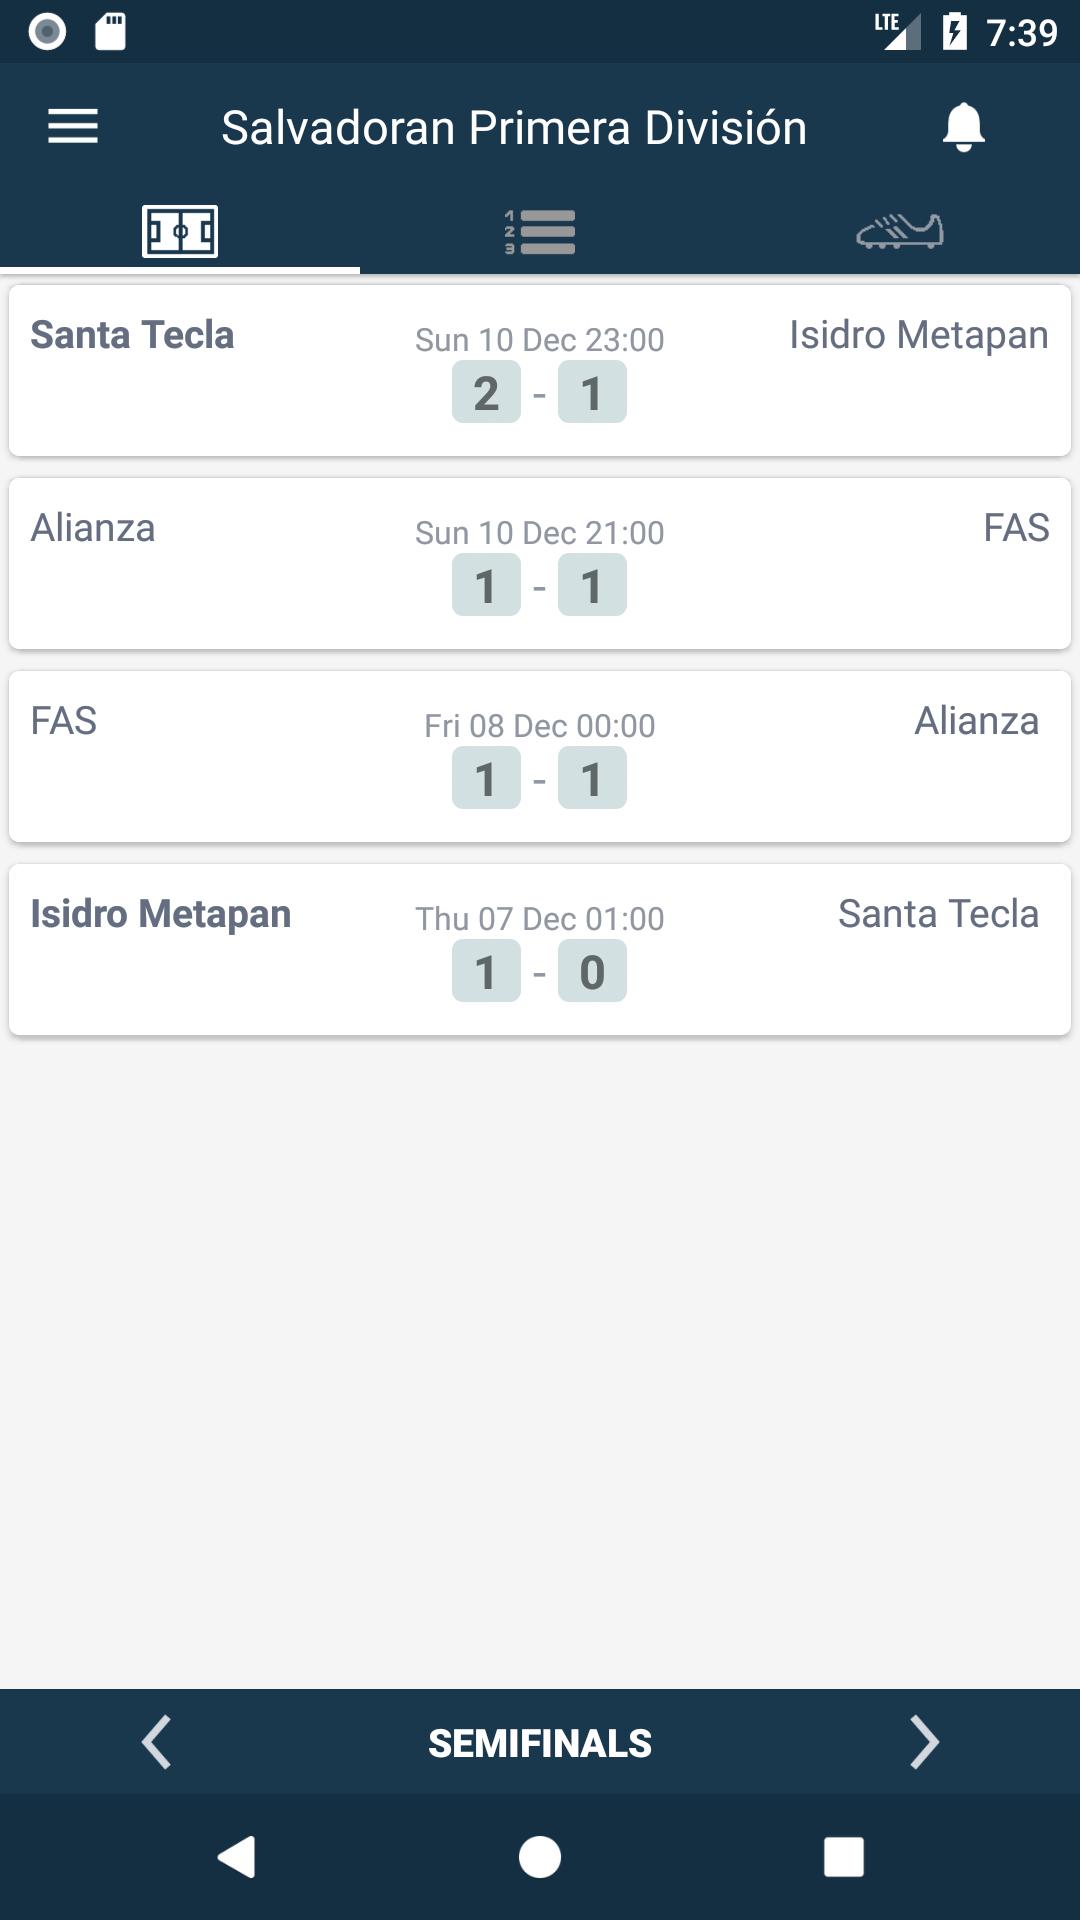 Resultados para Primera División - El Salvador for Android - APK Download